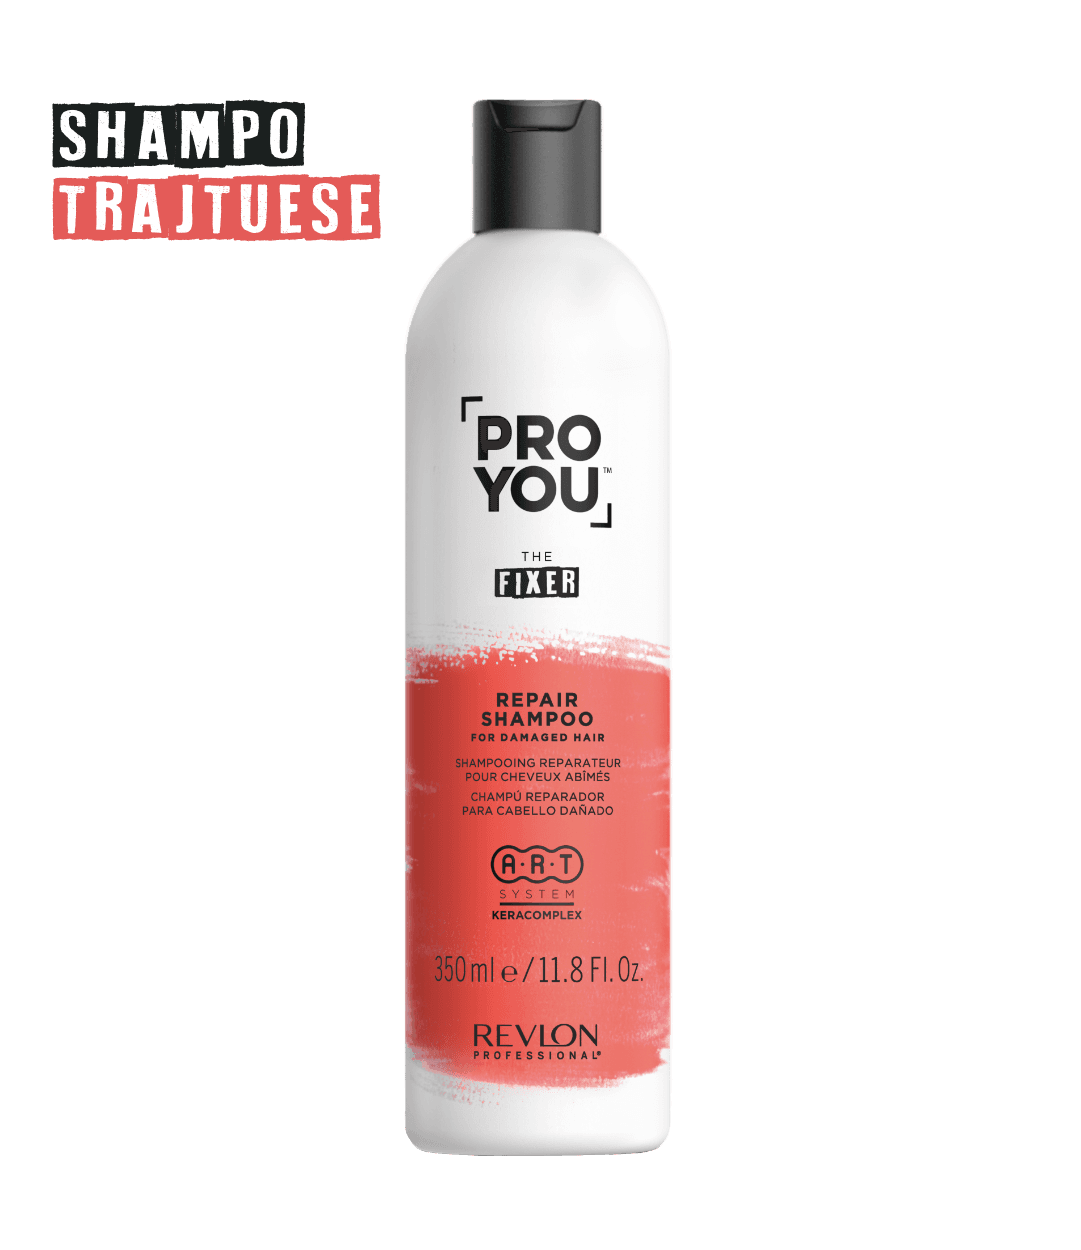 Proyou Fixer Repair Shampoo - Sagema